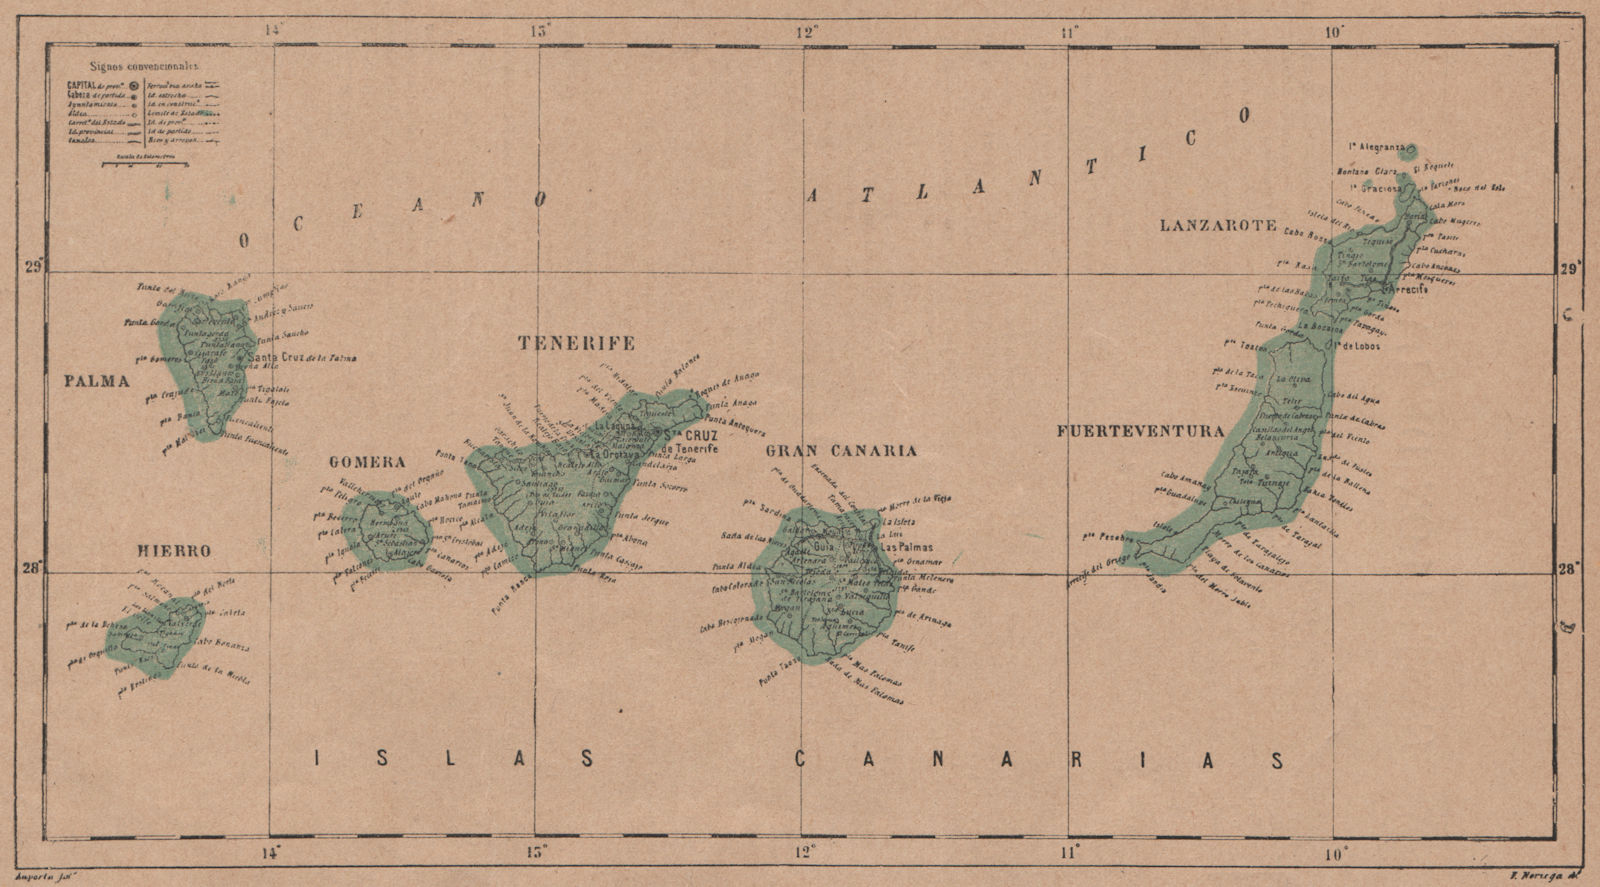 ISLAS CANARIAS. Tenerife Palma Gran Canaria Fuerteventura Lanzarote 1908 map